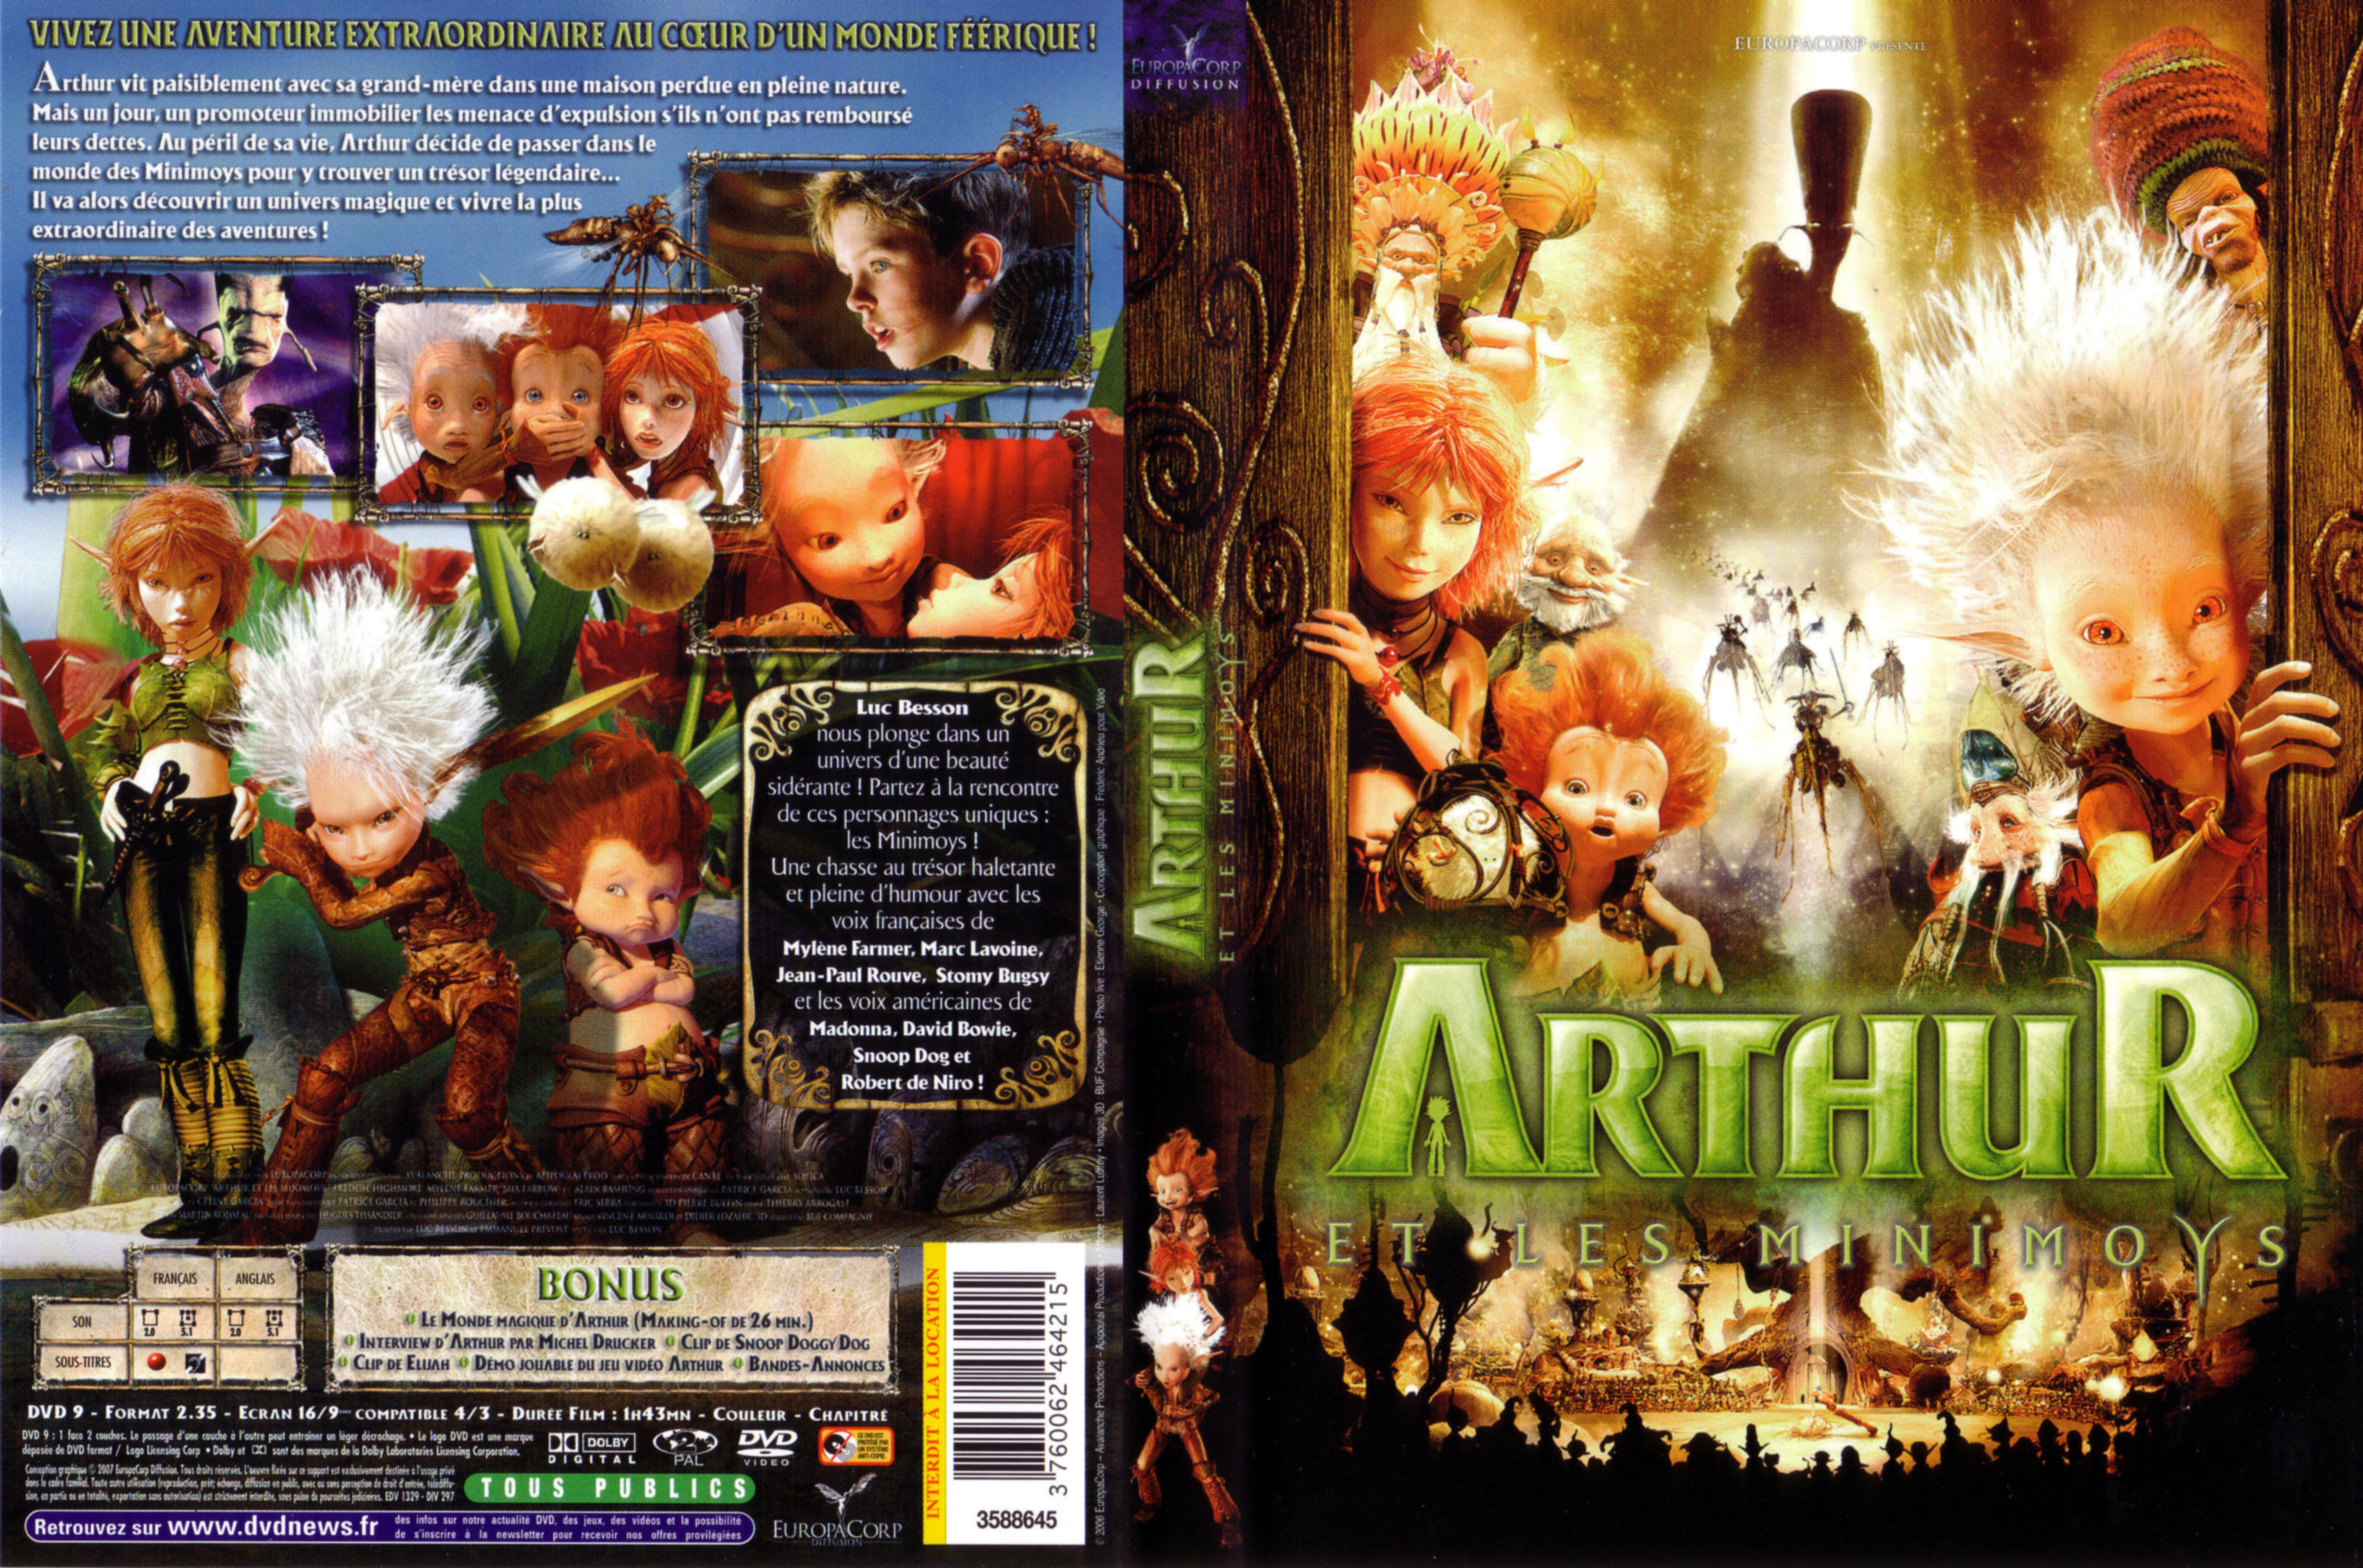 Jaquette DVD Arthur et les minimoys v2